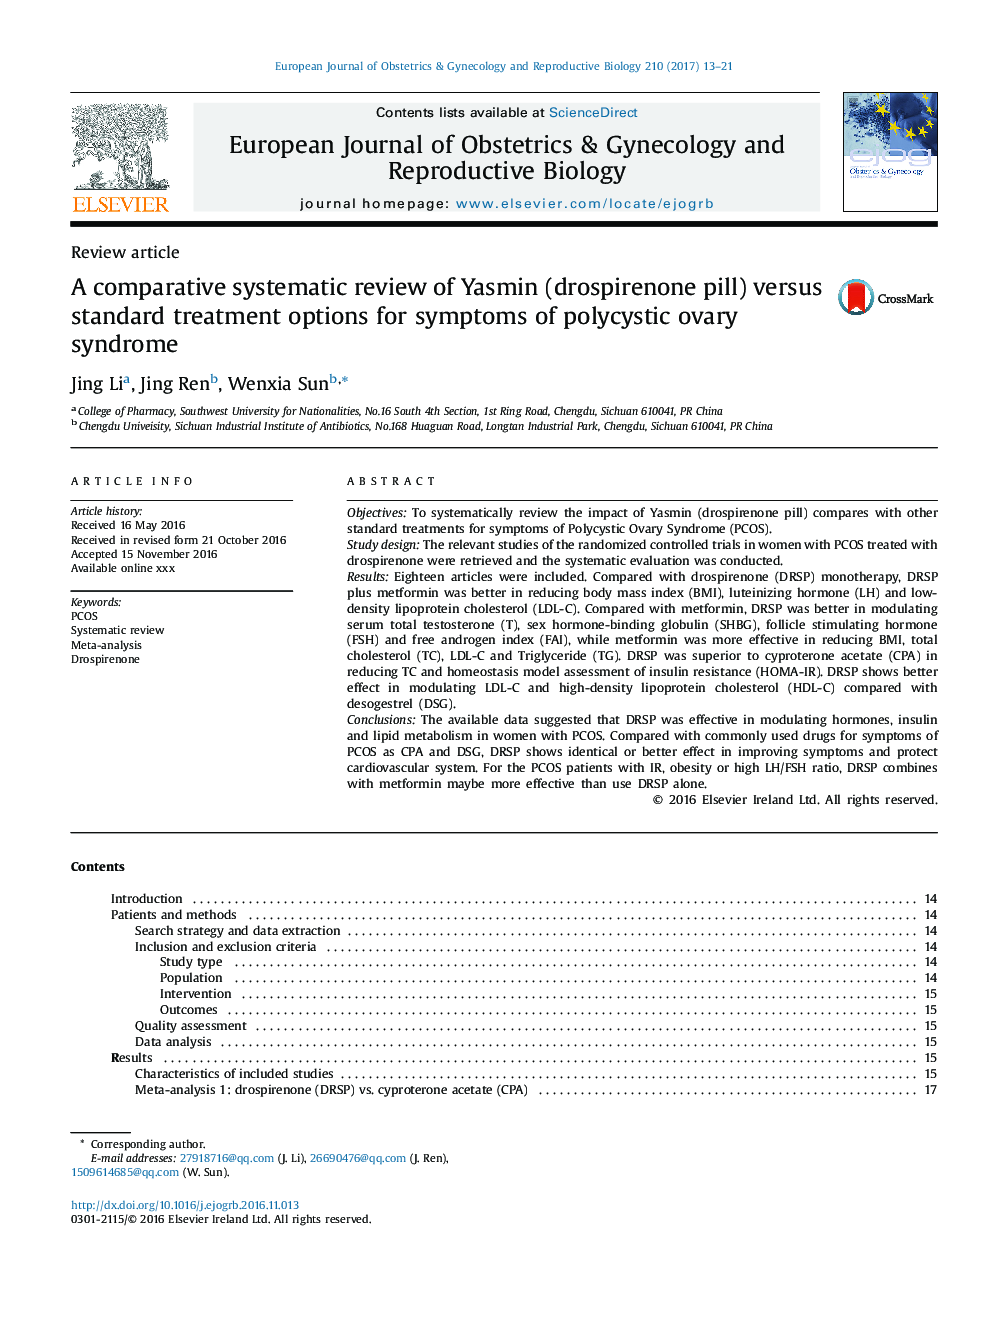 بررسی یک مقایسه تطبیقی ​​یاسمین (قرص داسپرانون) در مقایسه با گزینه های استاندارد برای علائم سندرم تخمدان پلی کیستیک 